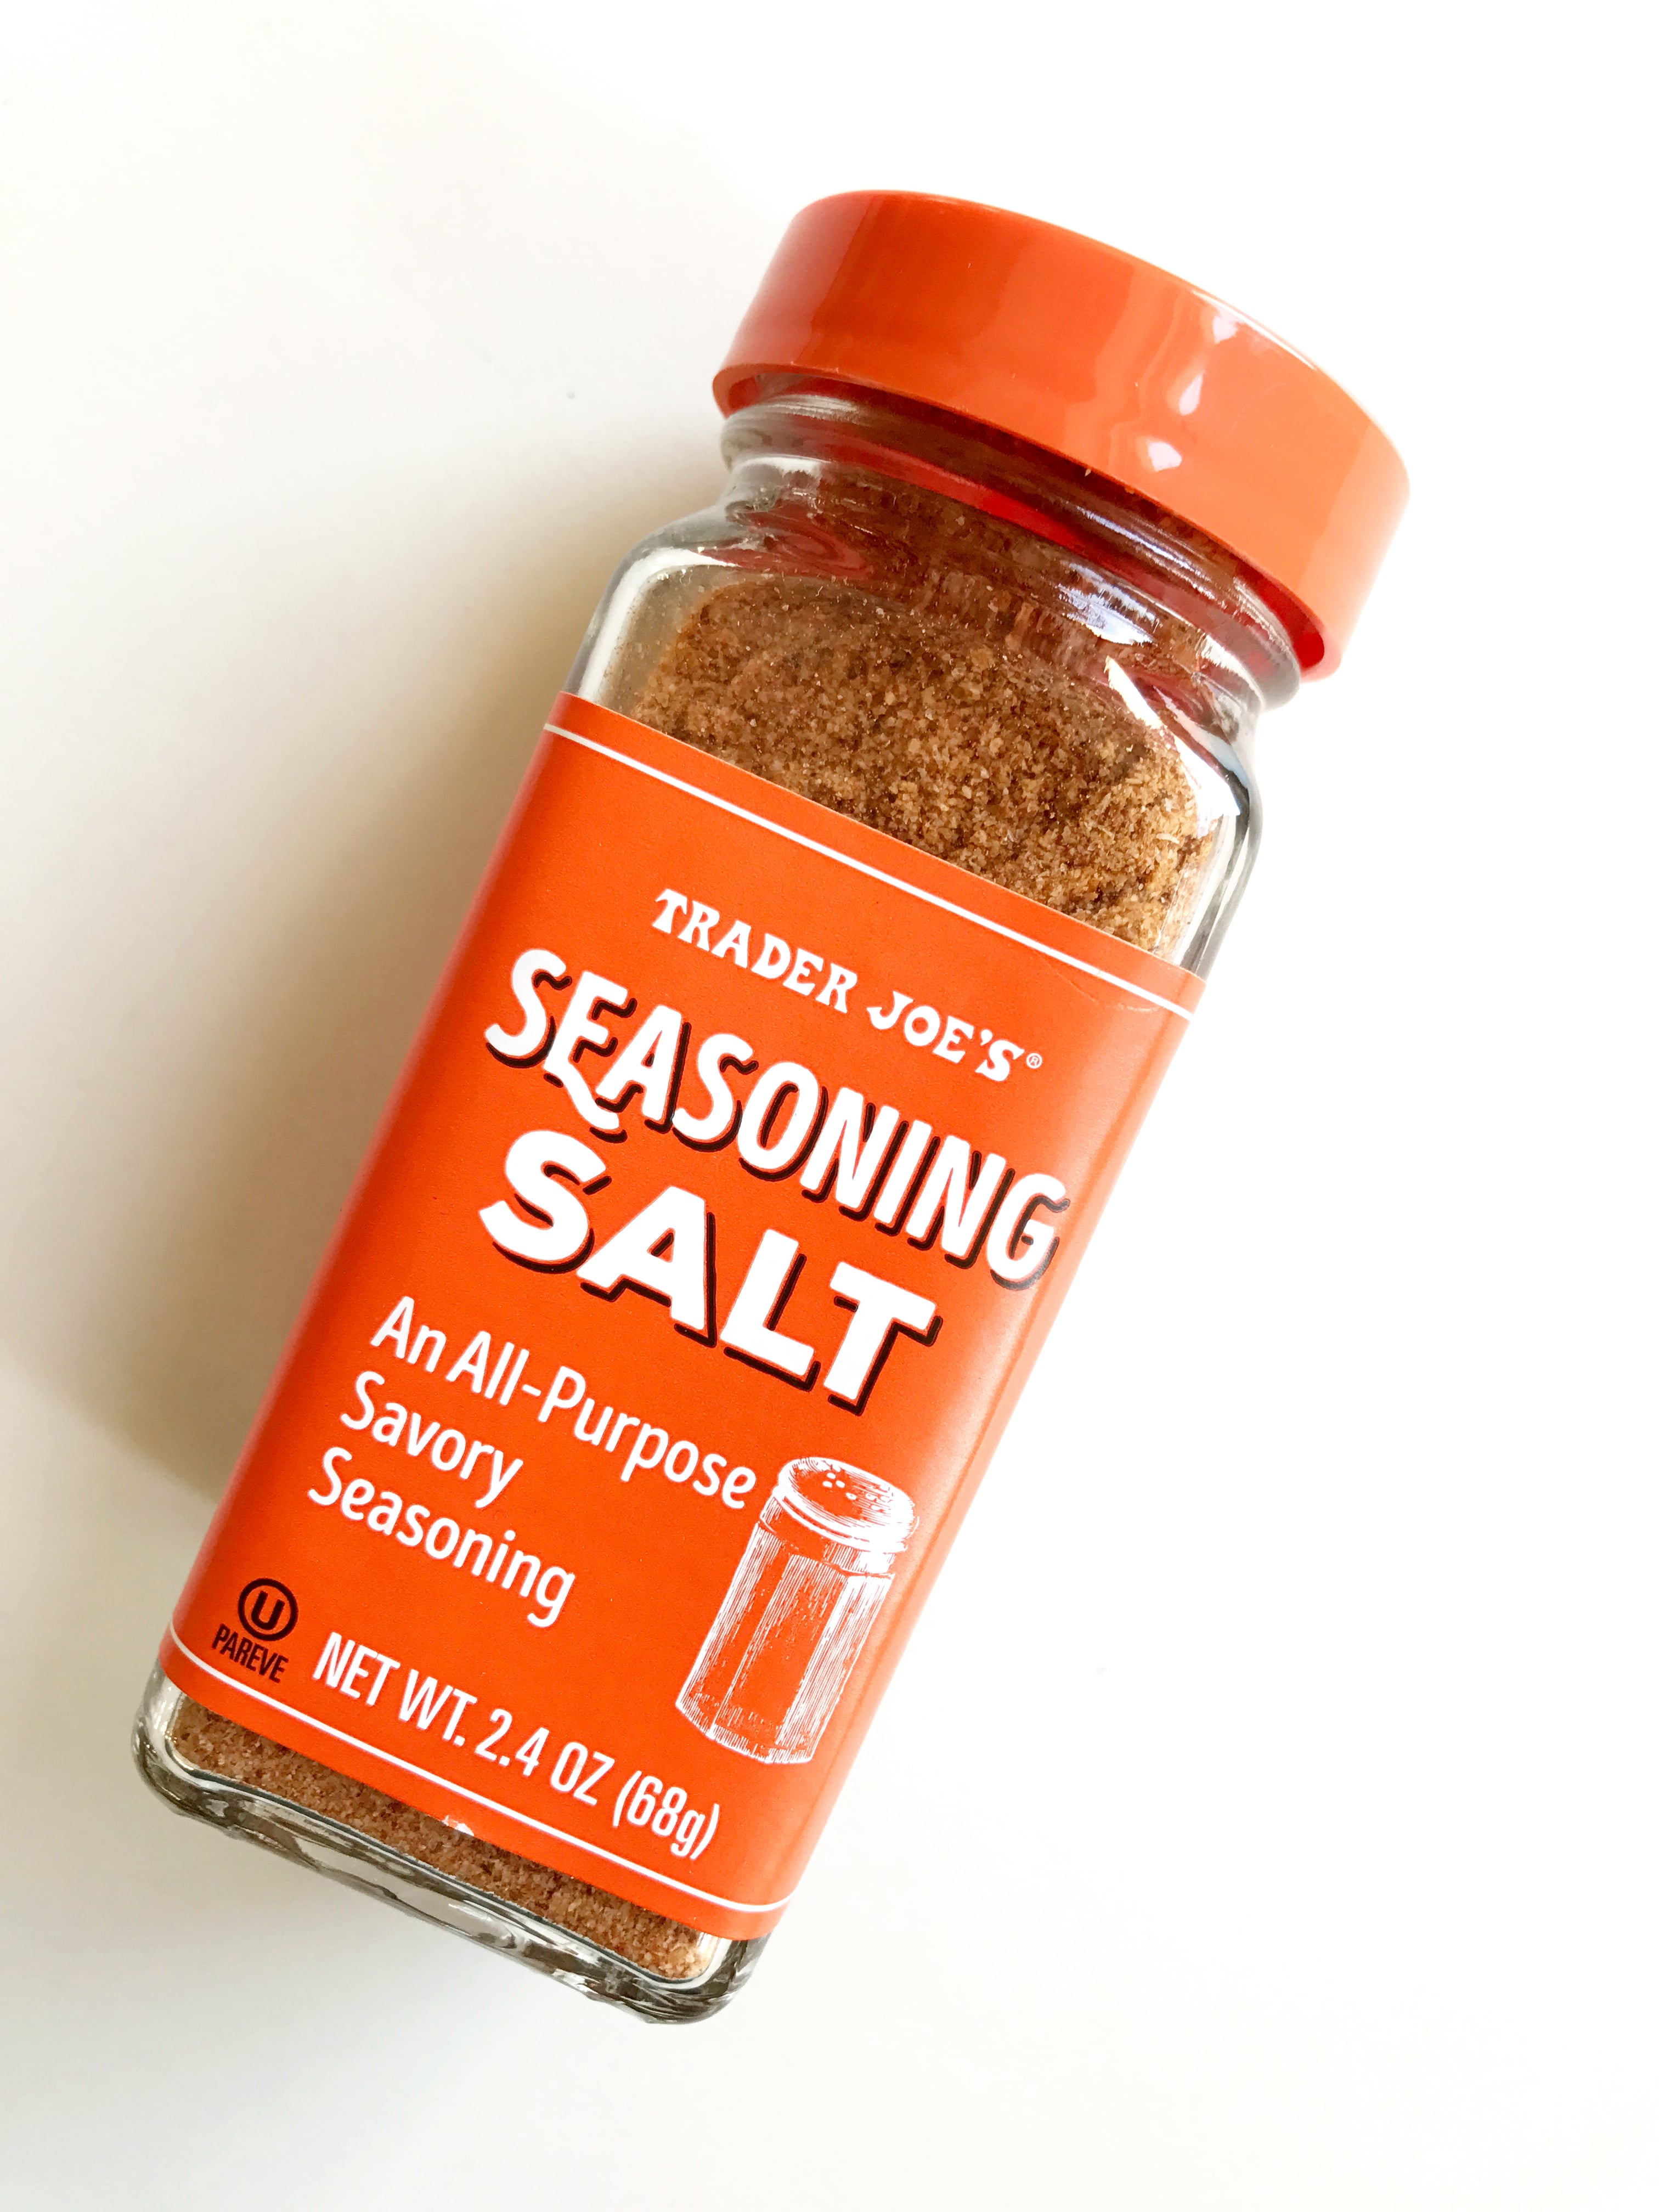 Kittery Trading Post Salt & Vinegar Seasoning